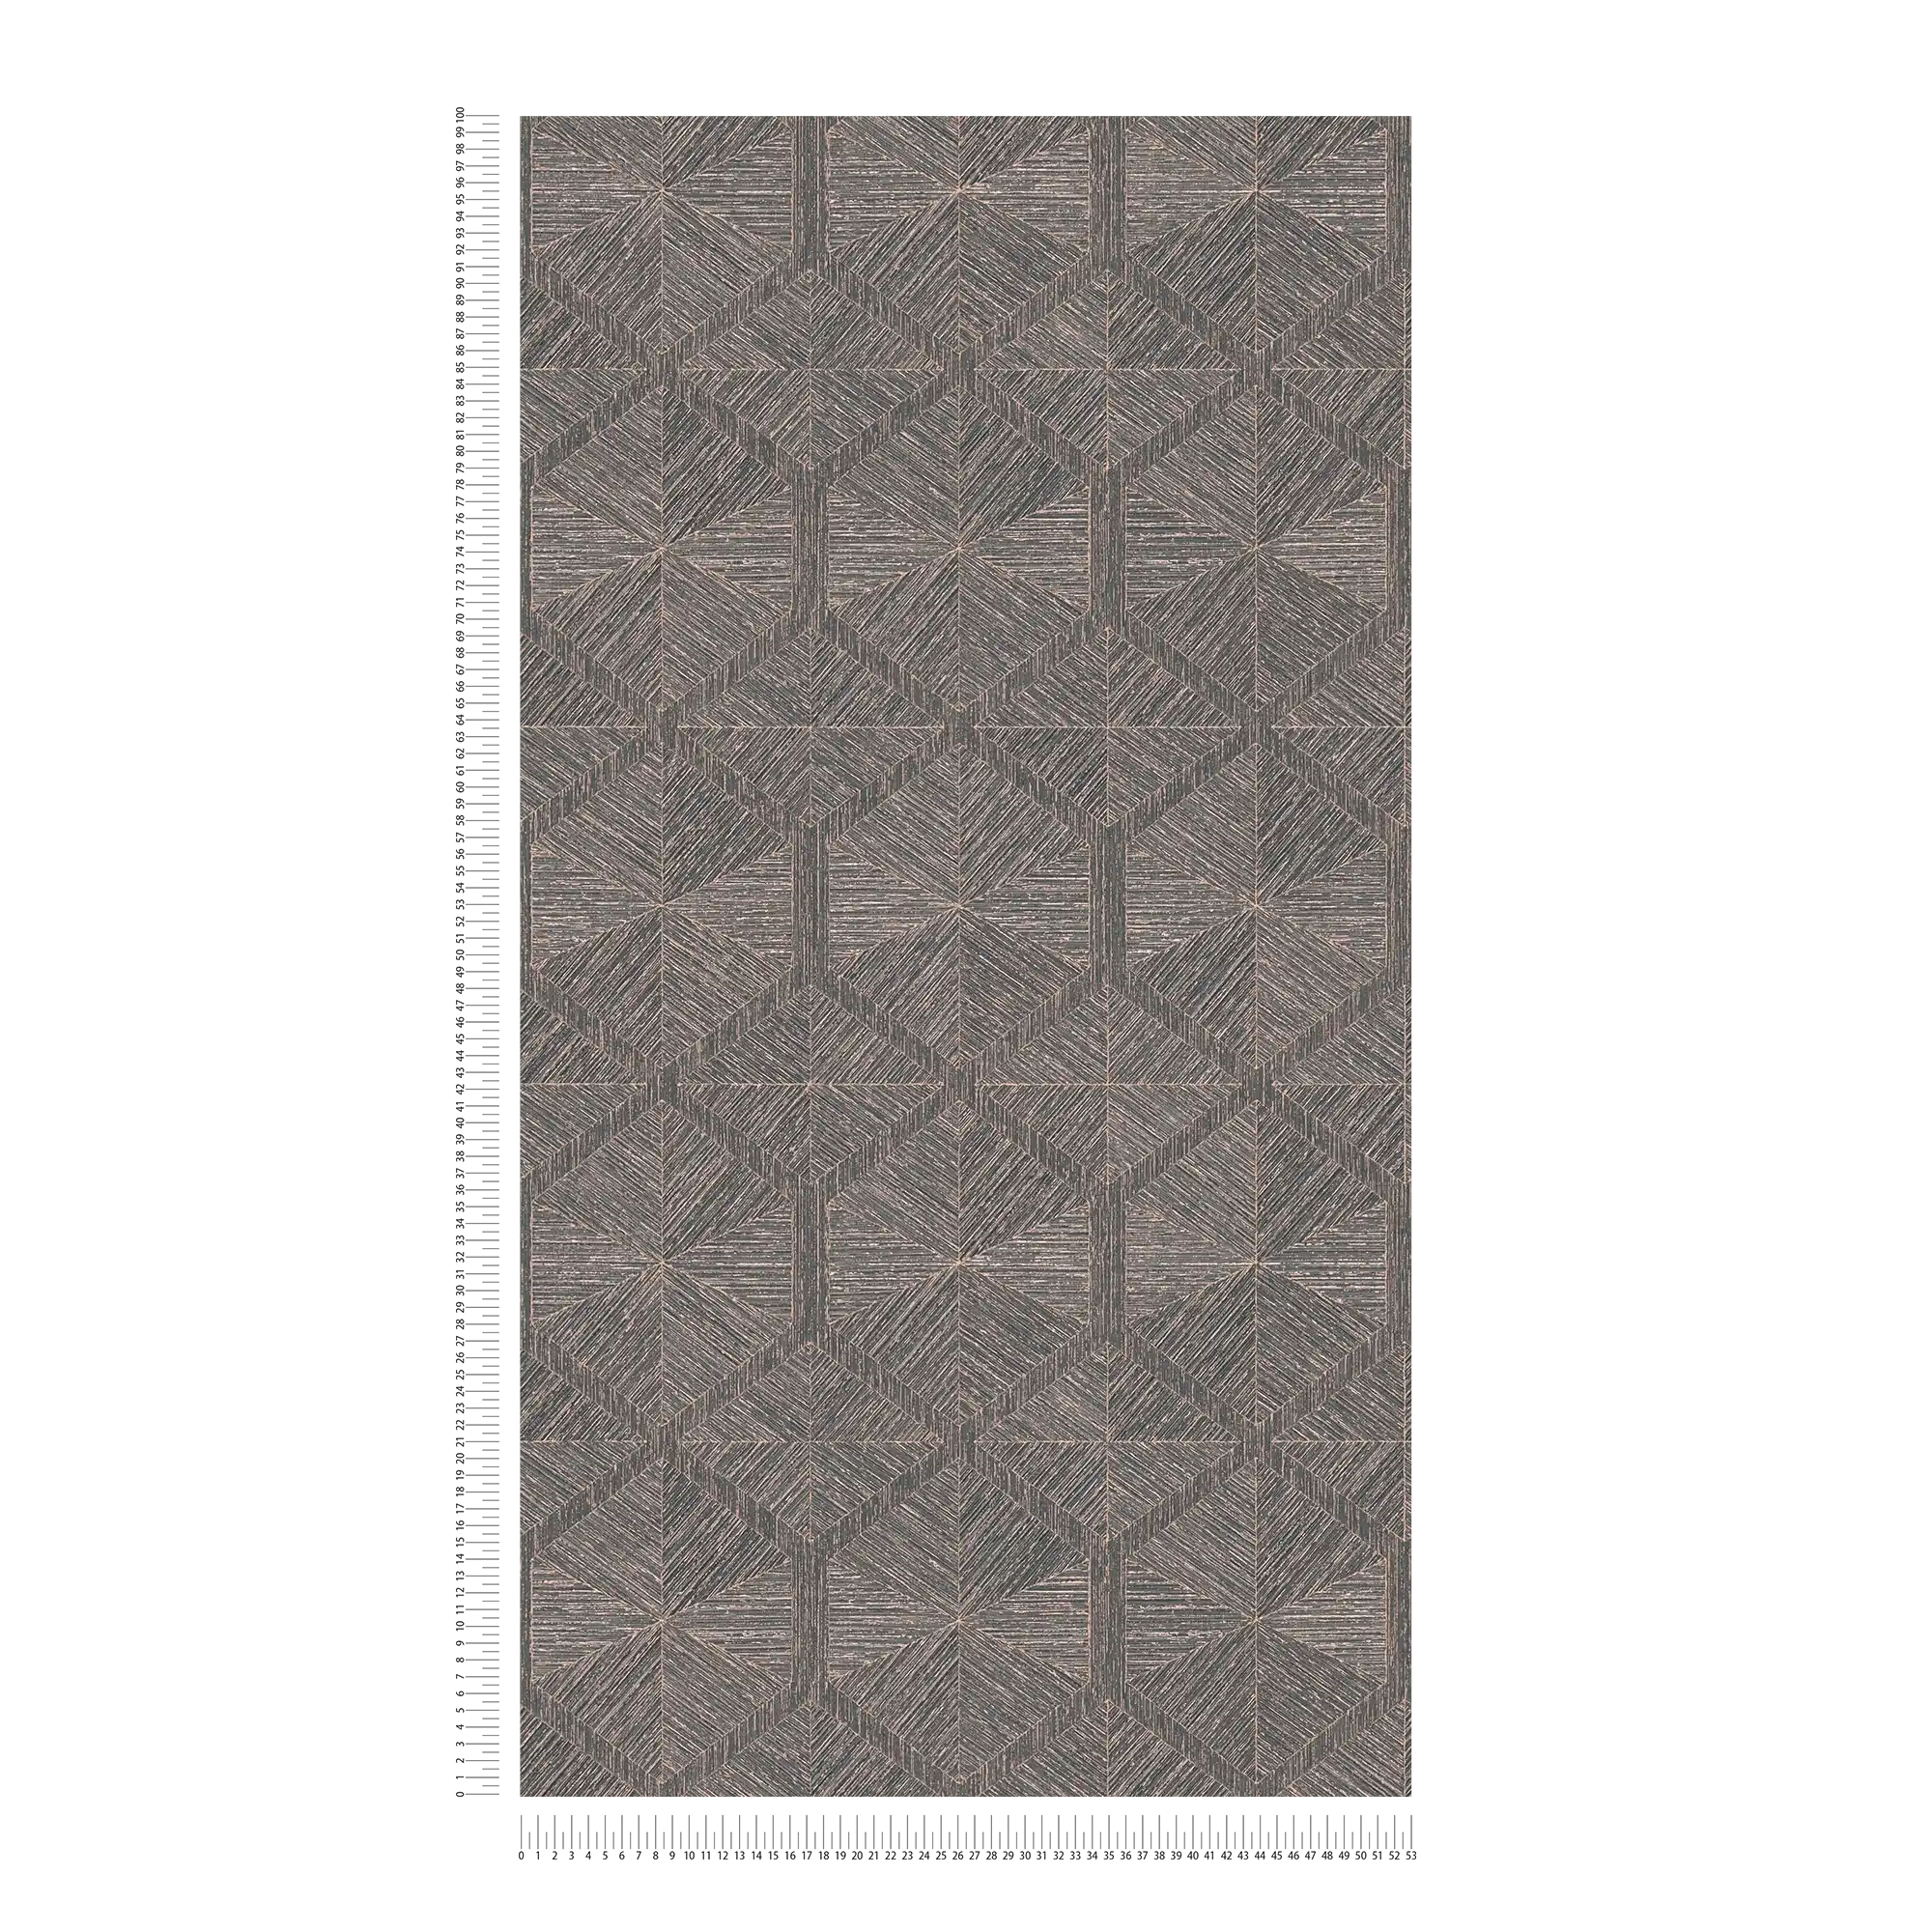             Carta da parati grafica effetto legno con effetto metallizzato - marrone, metallizzato
        